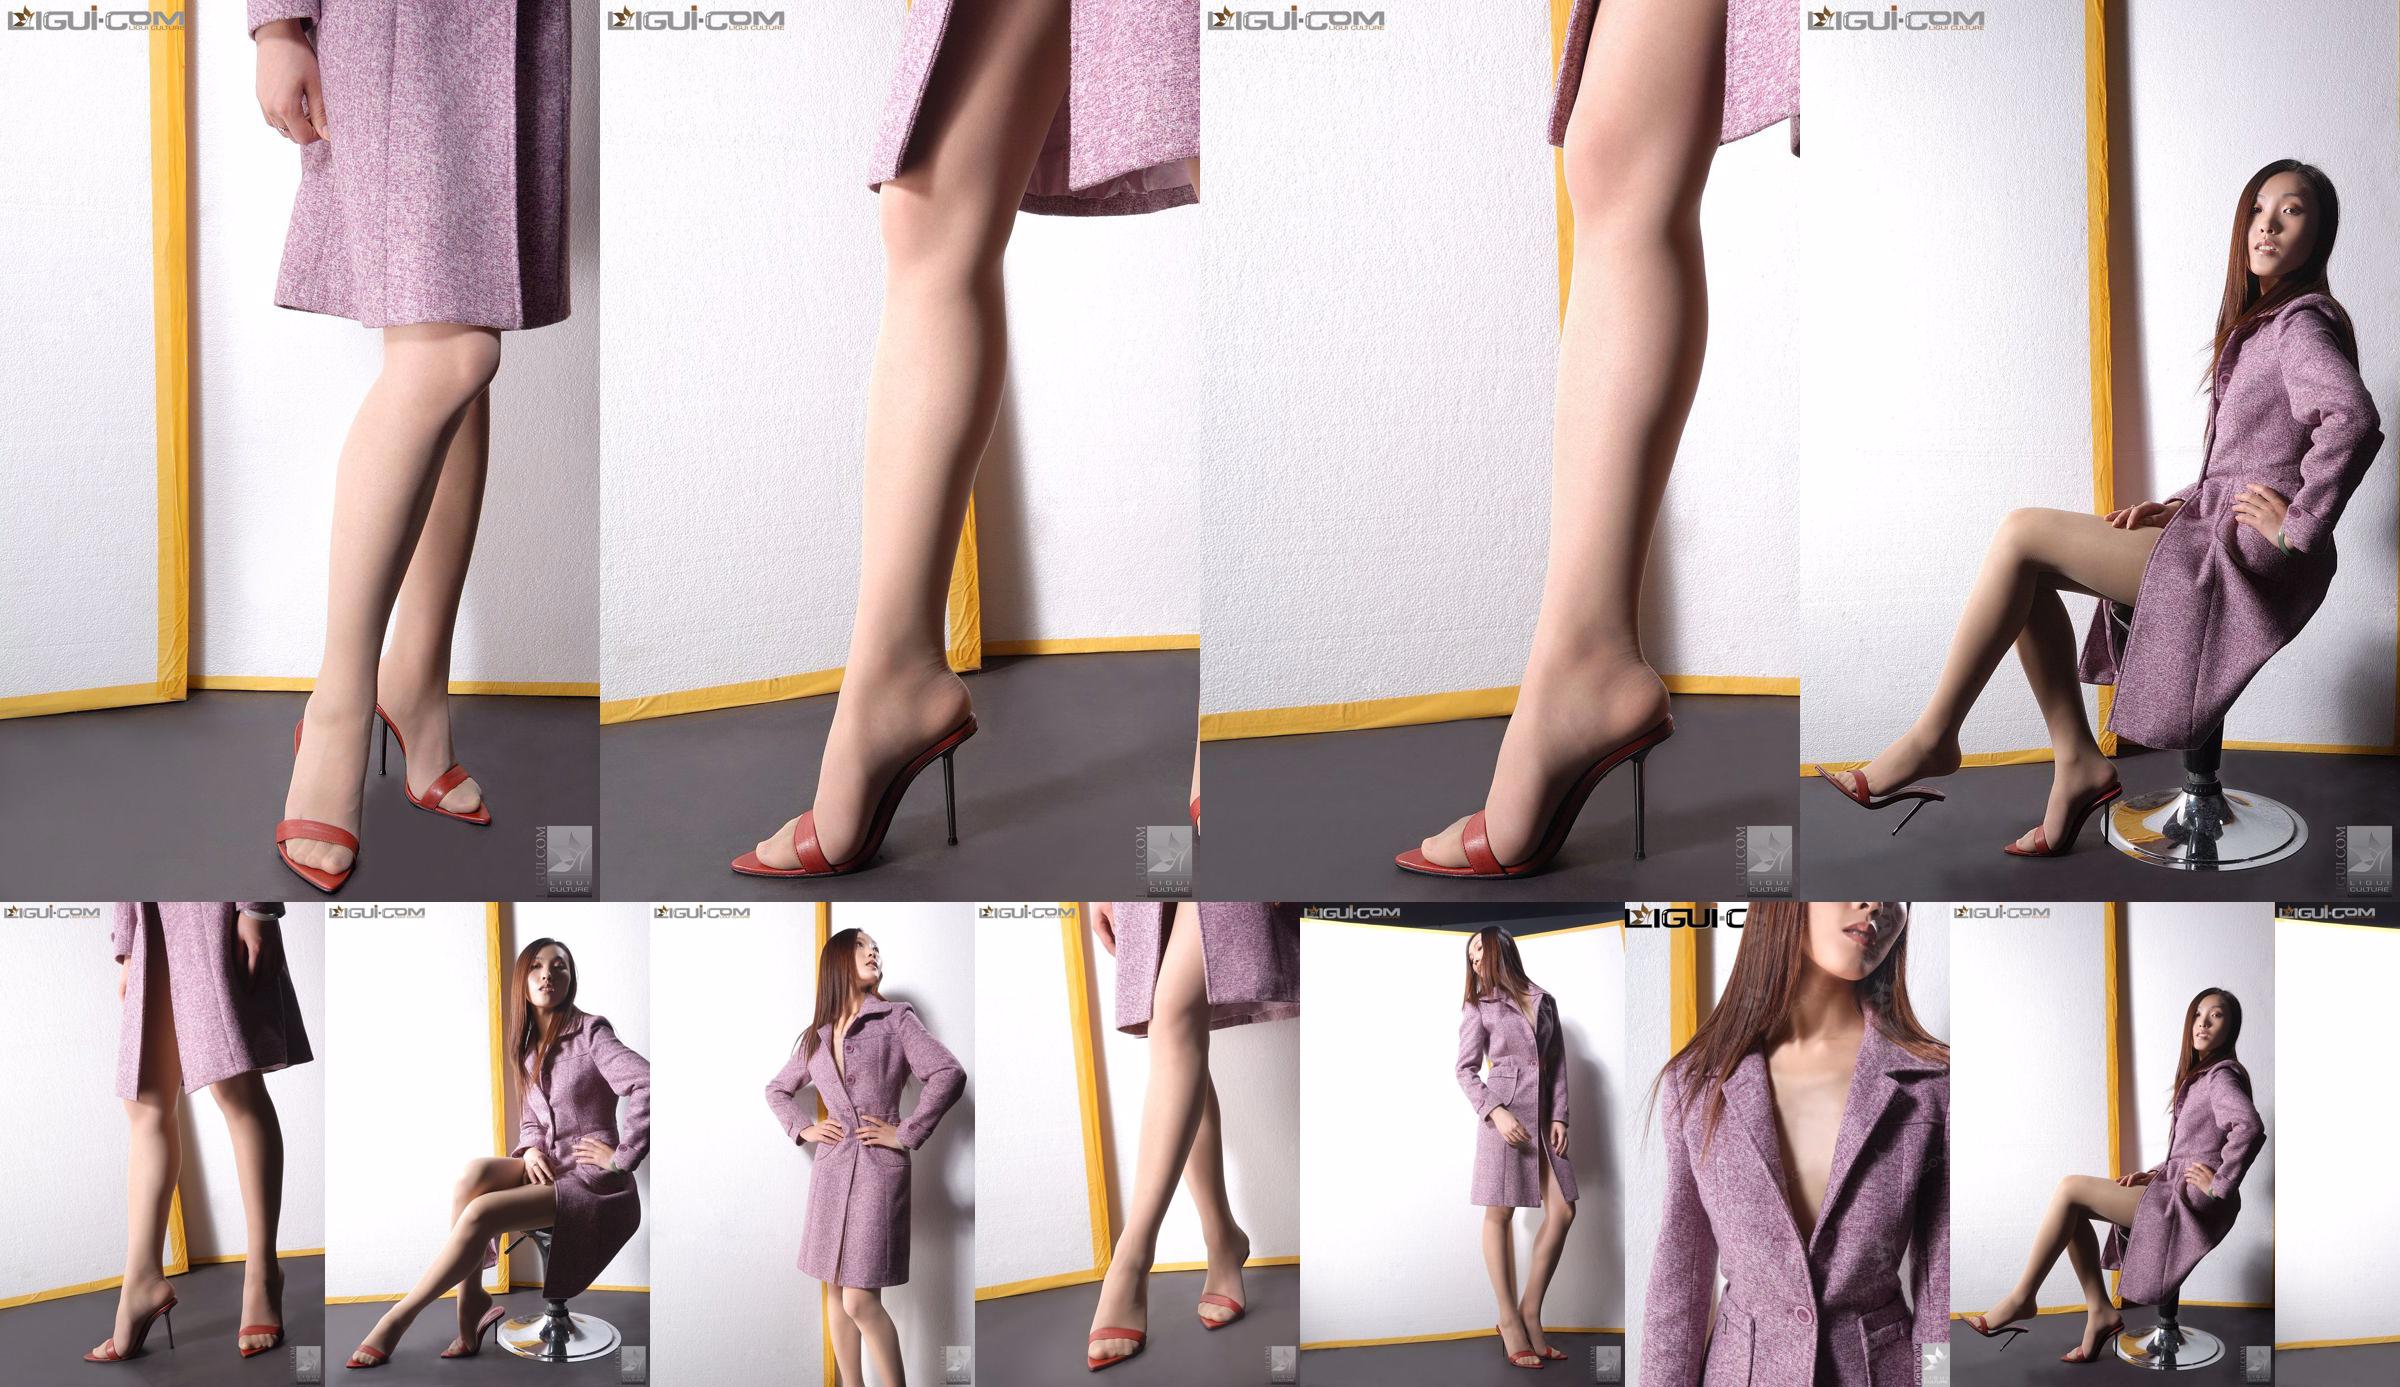 Model Zhang Ai "Taxusmeisje met hoge hakken" [Ligui LiGui] Foto van mooie benen en voeten No.56c6d6 Pagina 1